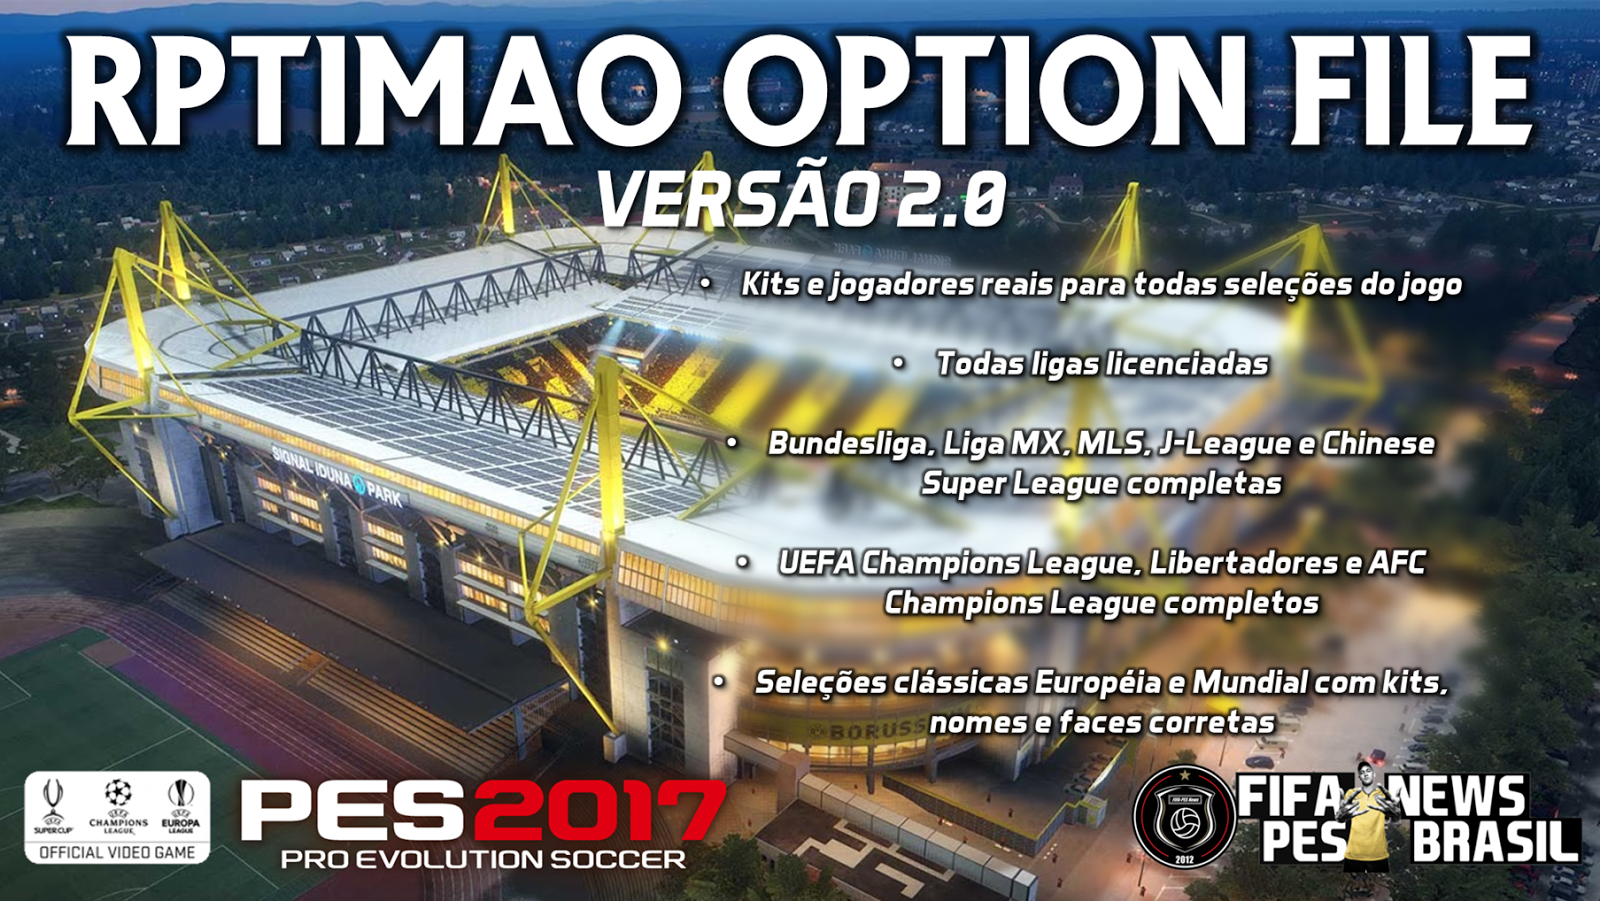 FIFA-PES News Brasil: [PES 2017] Rptimao Option File 2.0 disponível com MLS  e Liga Chinesa!